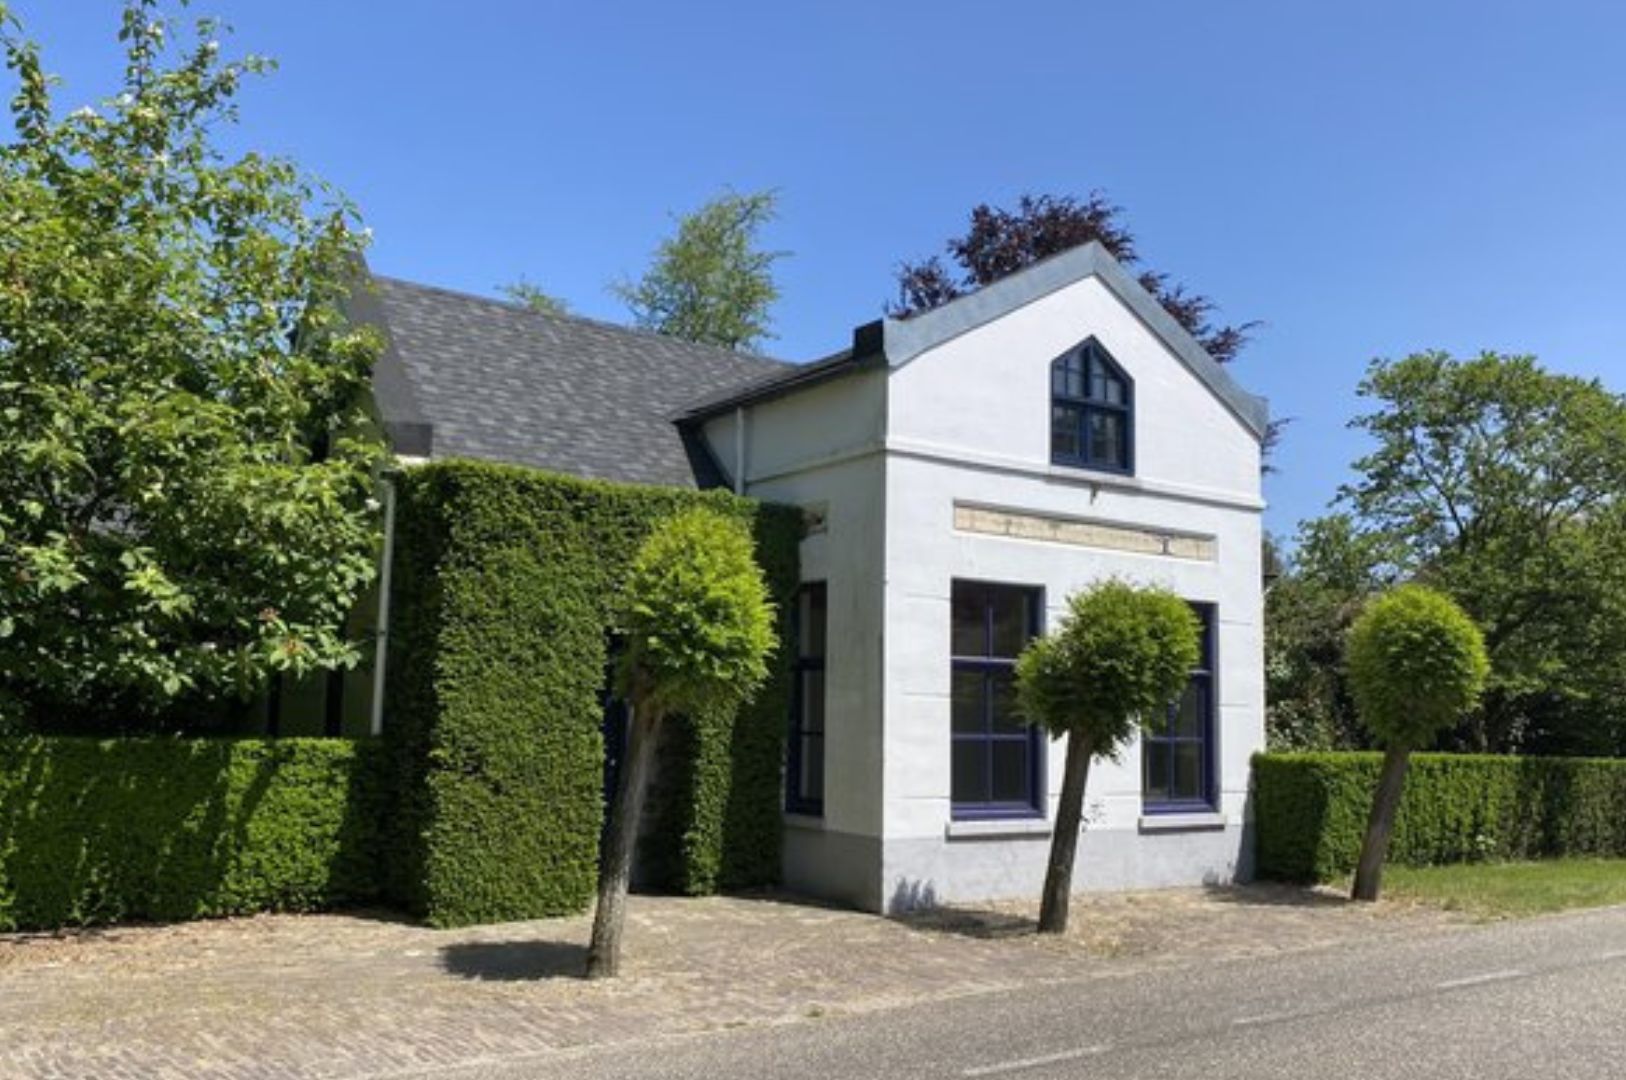 Villapparte-Dorpswoning Het Tolhuis-Villapparte Select-Luxe vakantiehuis voor 10 personen-Leende-Noord-Brabant